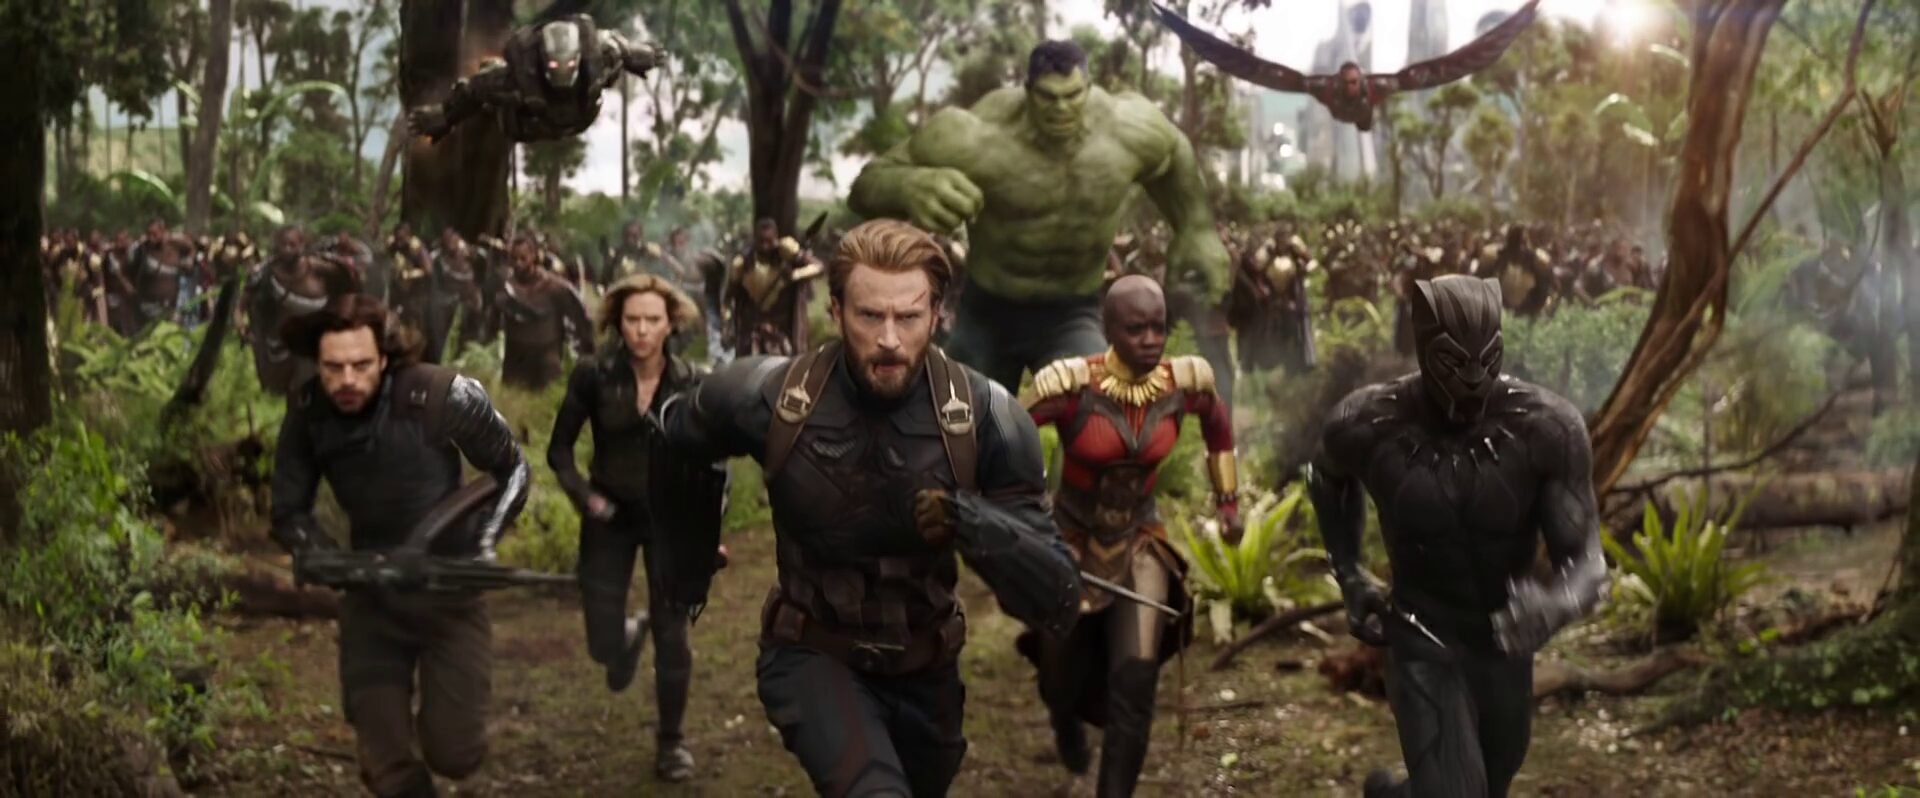 Marvel’s Avengers: Infinity War Trailer is Here